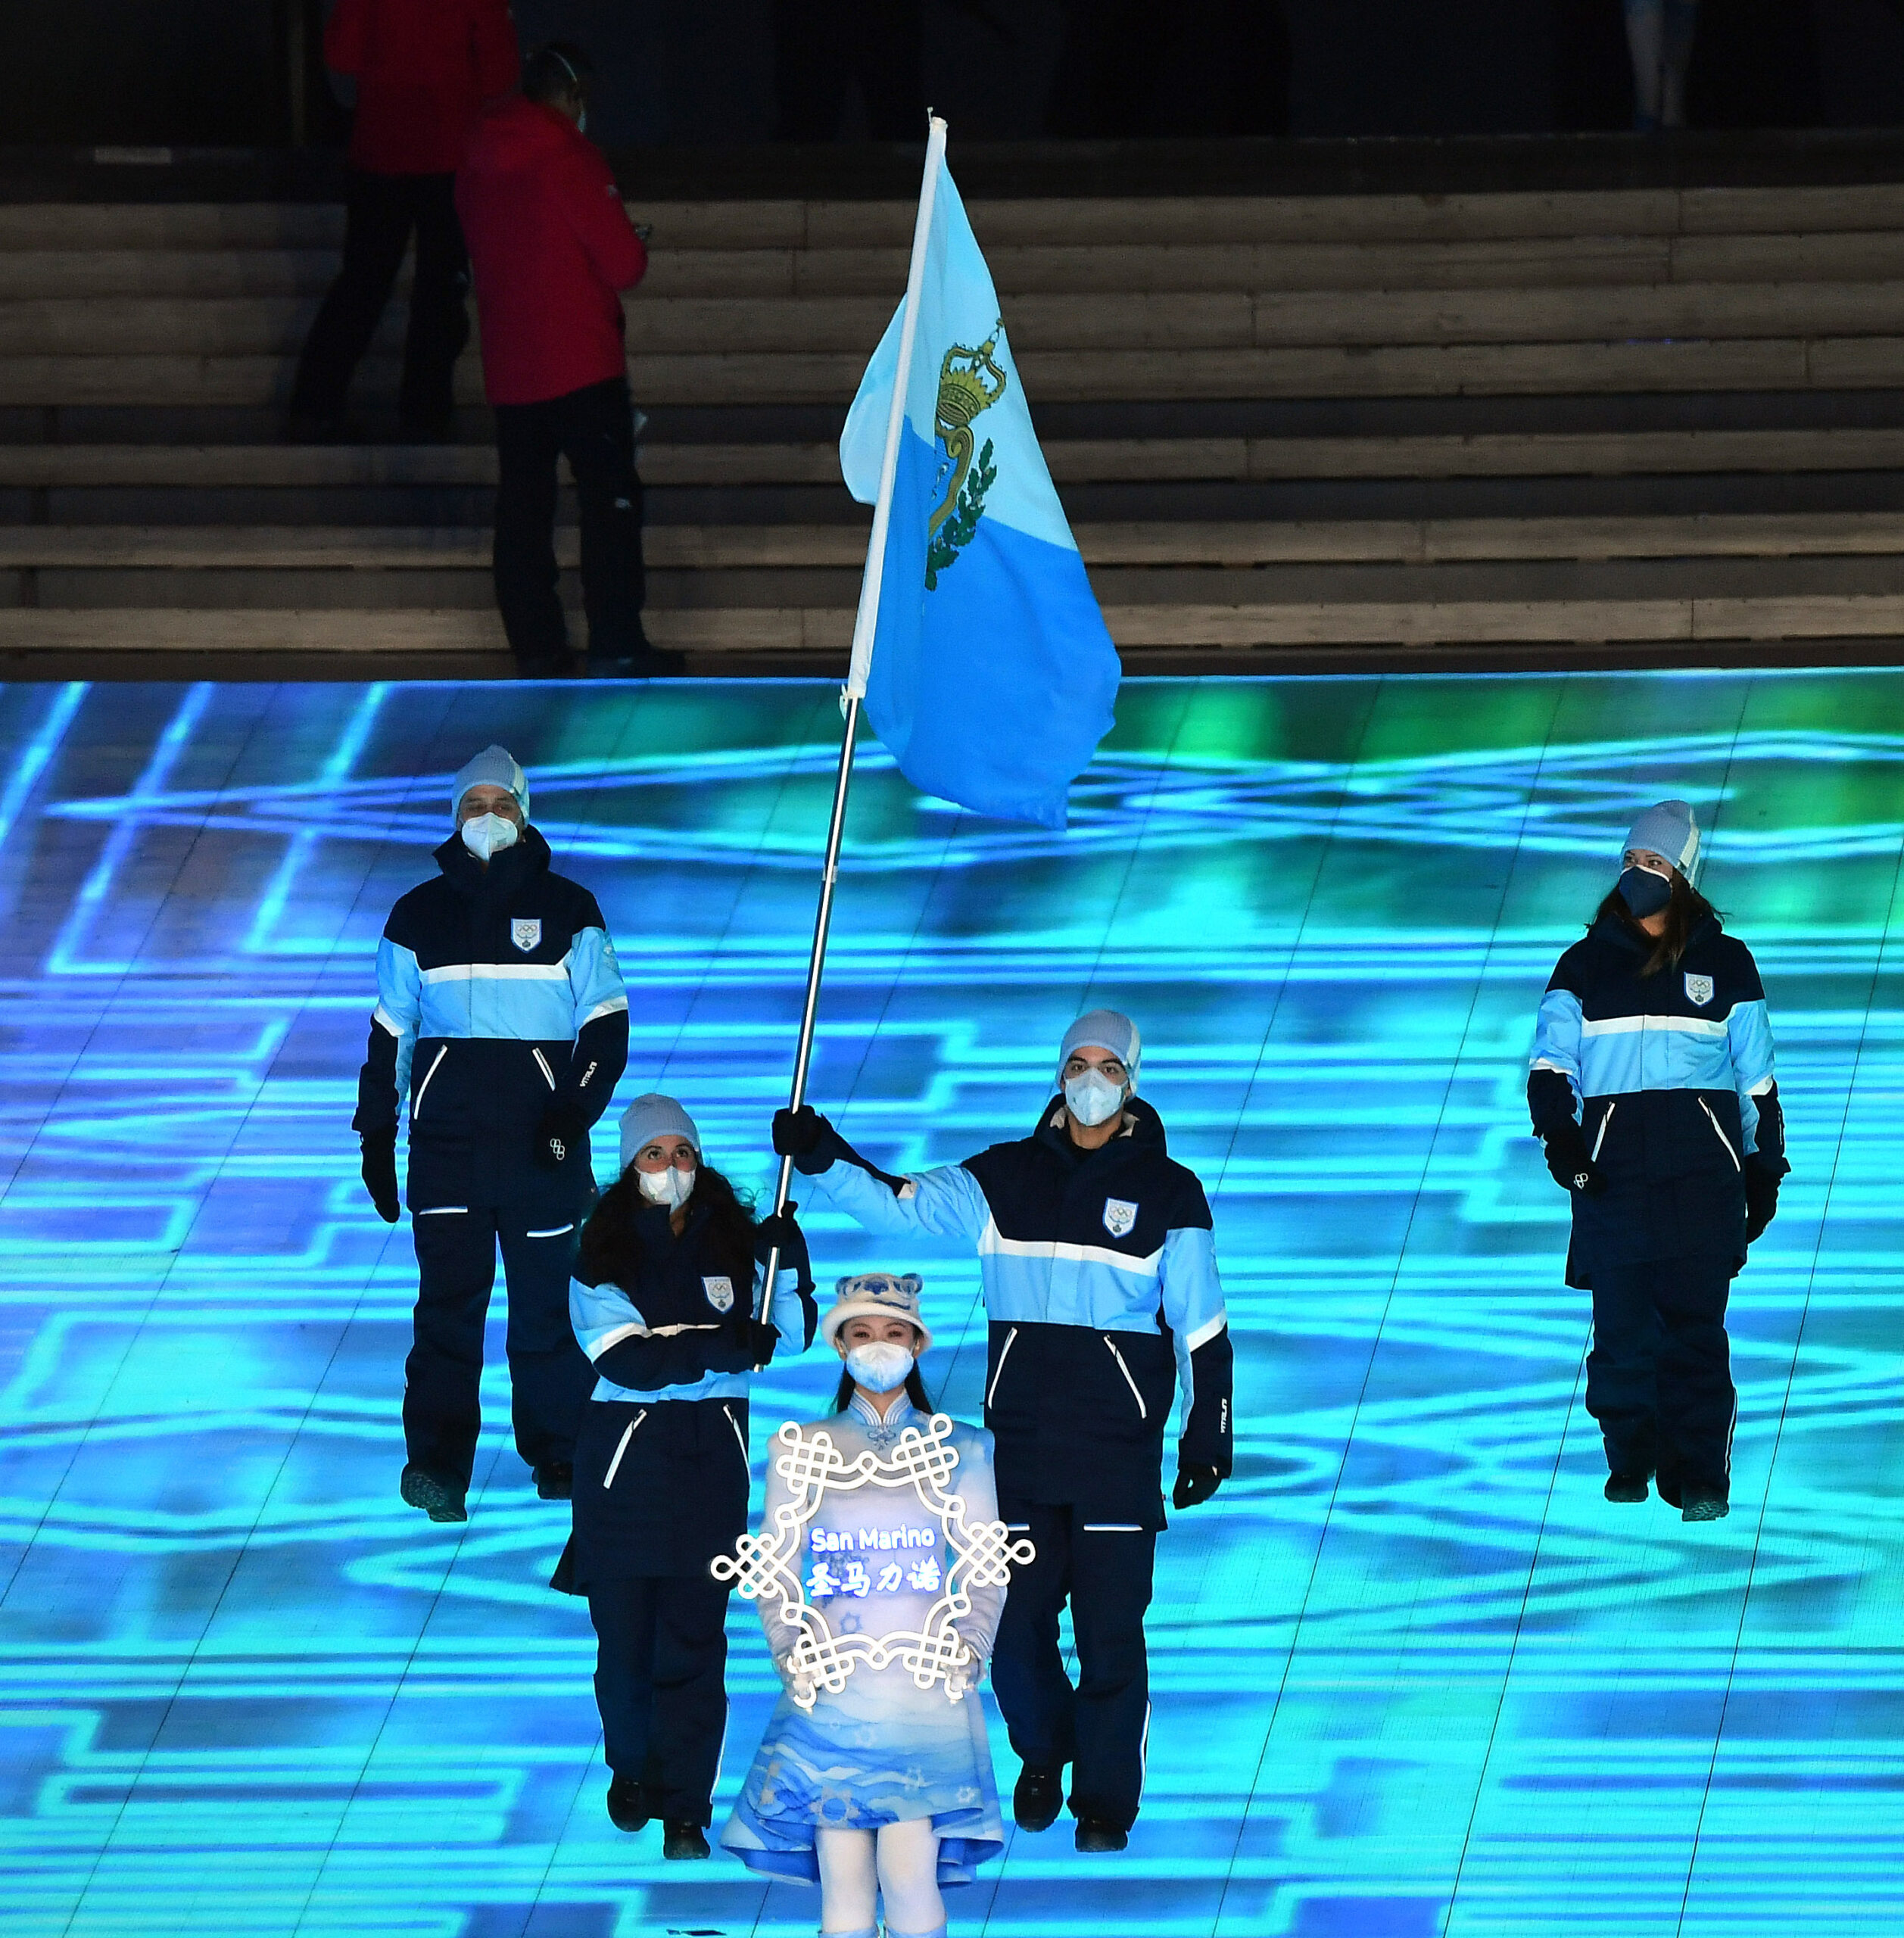 Aperti i Giochi Olimpici Invernali, presente a Pechino anche San Marino